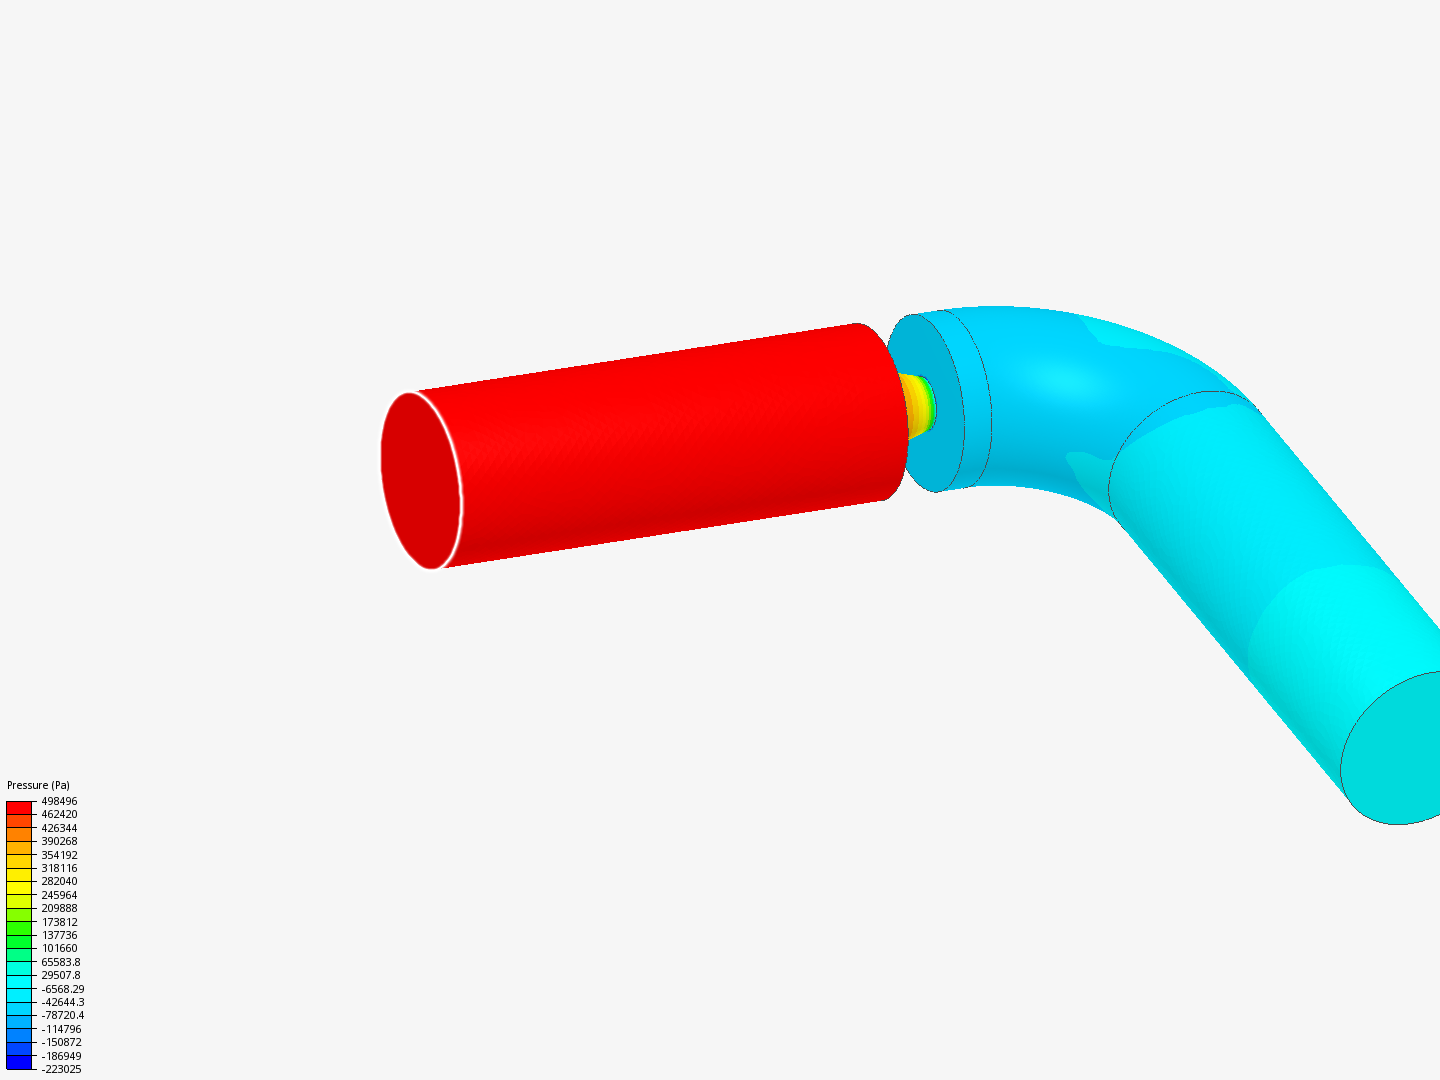 Pipe Pressure Drop (Initial Design) image